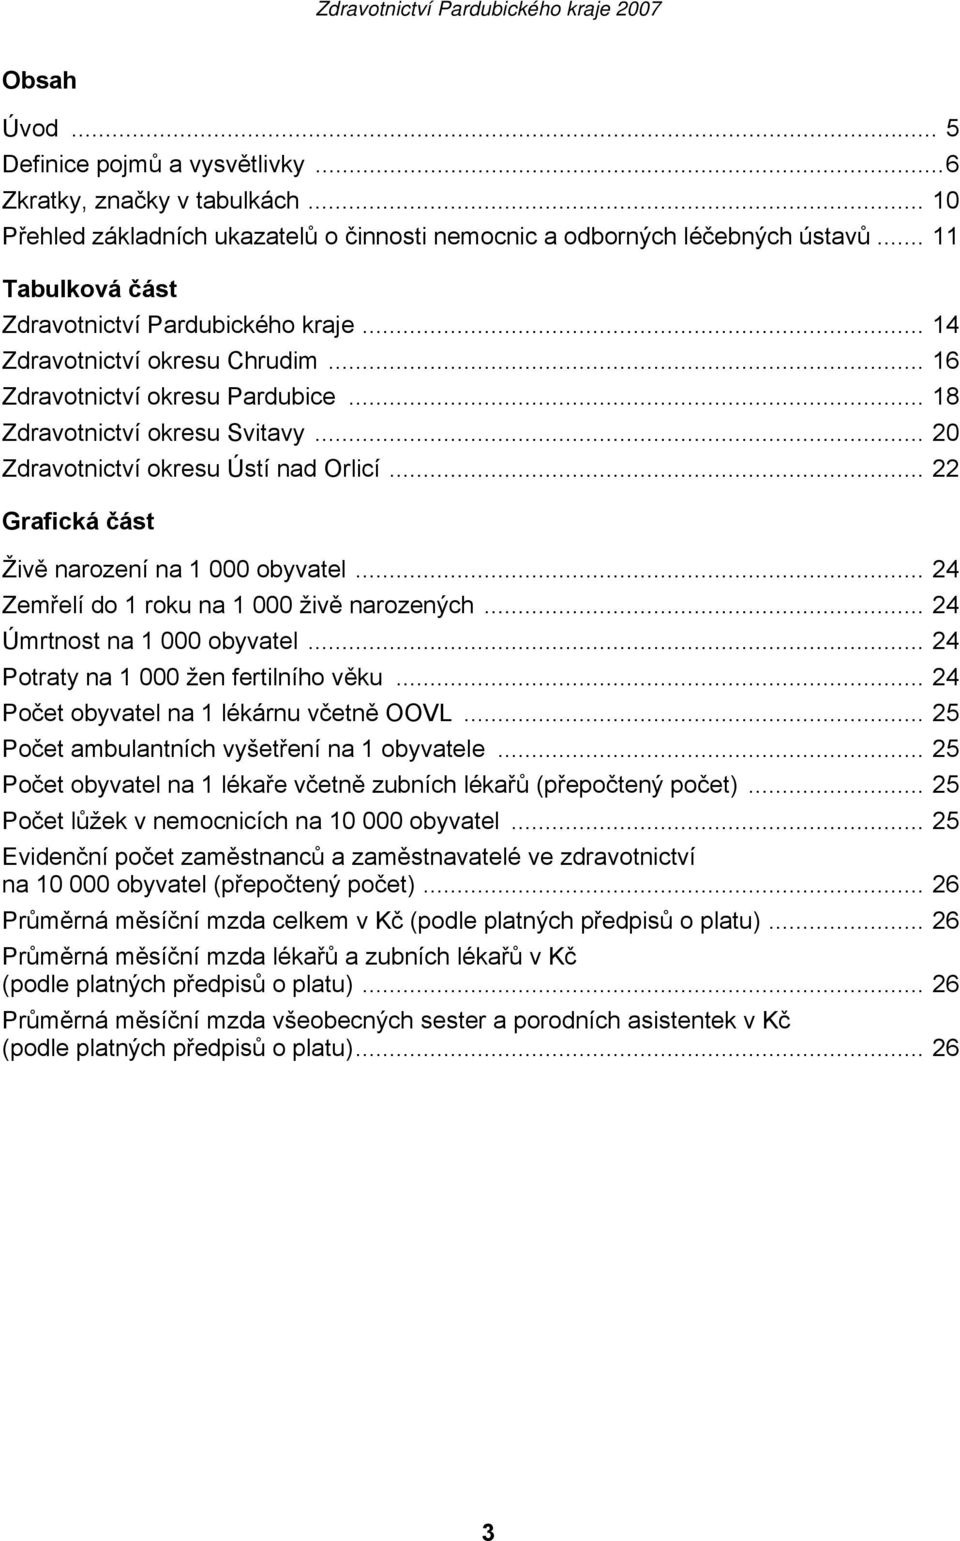 .. 20 Zdravotnictví okresu Ústí nad Orlicí... 22 Grafická část Živě narození na 1 000 obyvatel... 24 Zemřelí do 1 roku na 1 000 živě narozených... 24 Úmrtnost na 1 000 obyvatel.